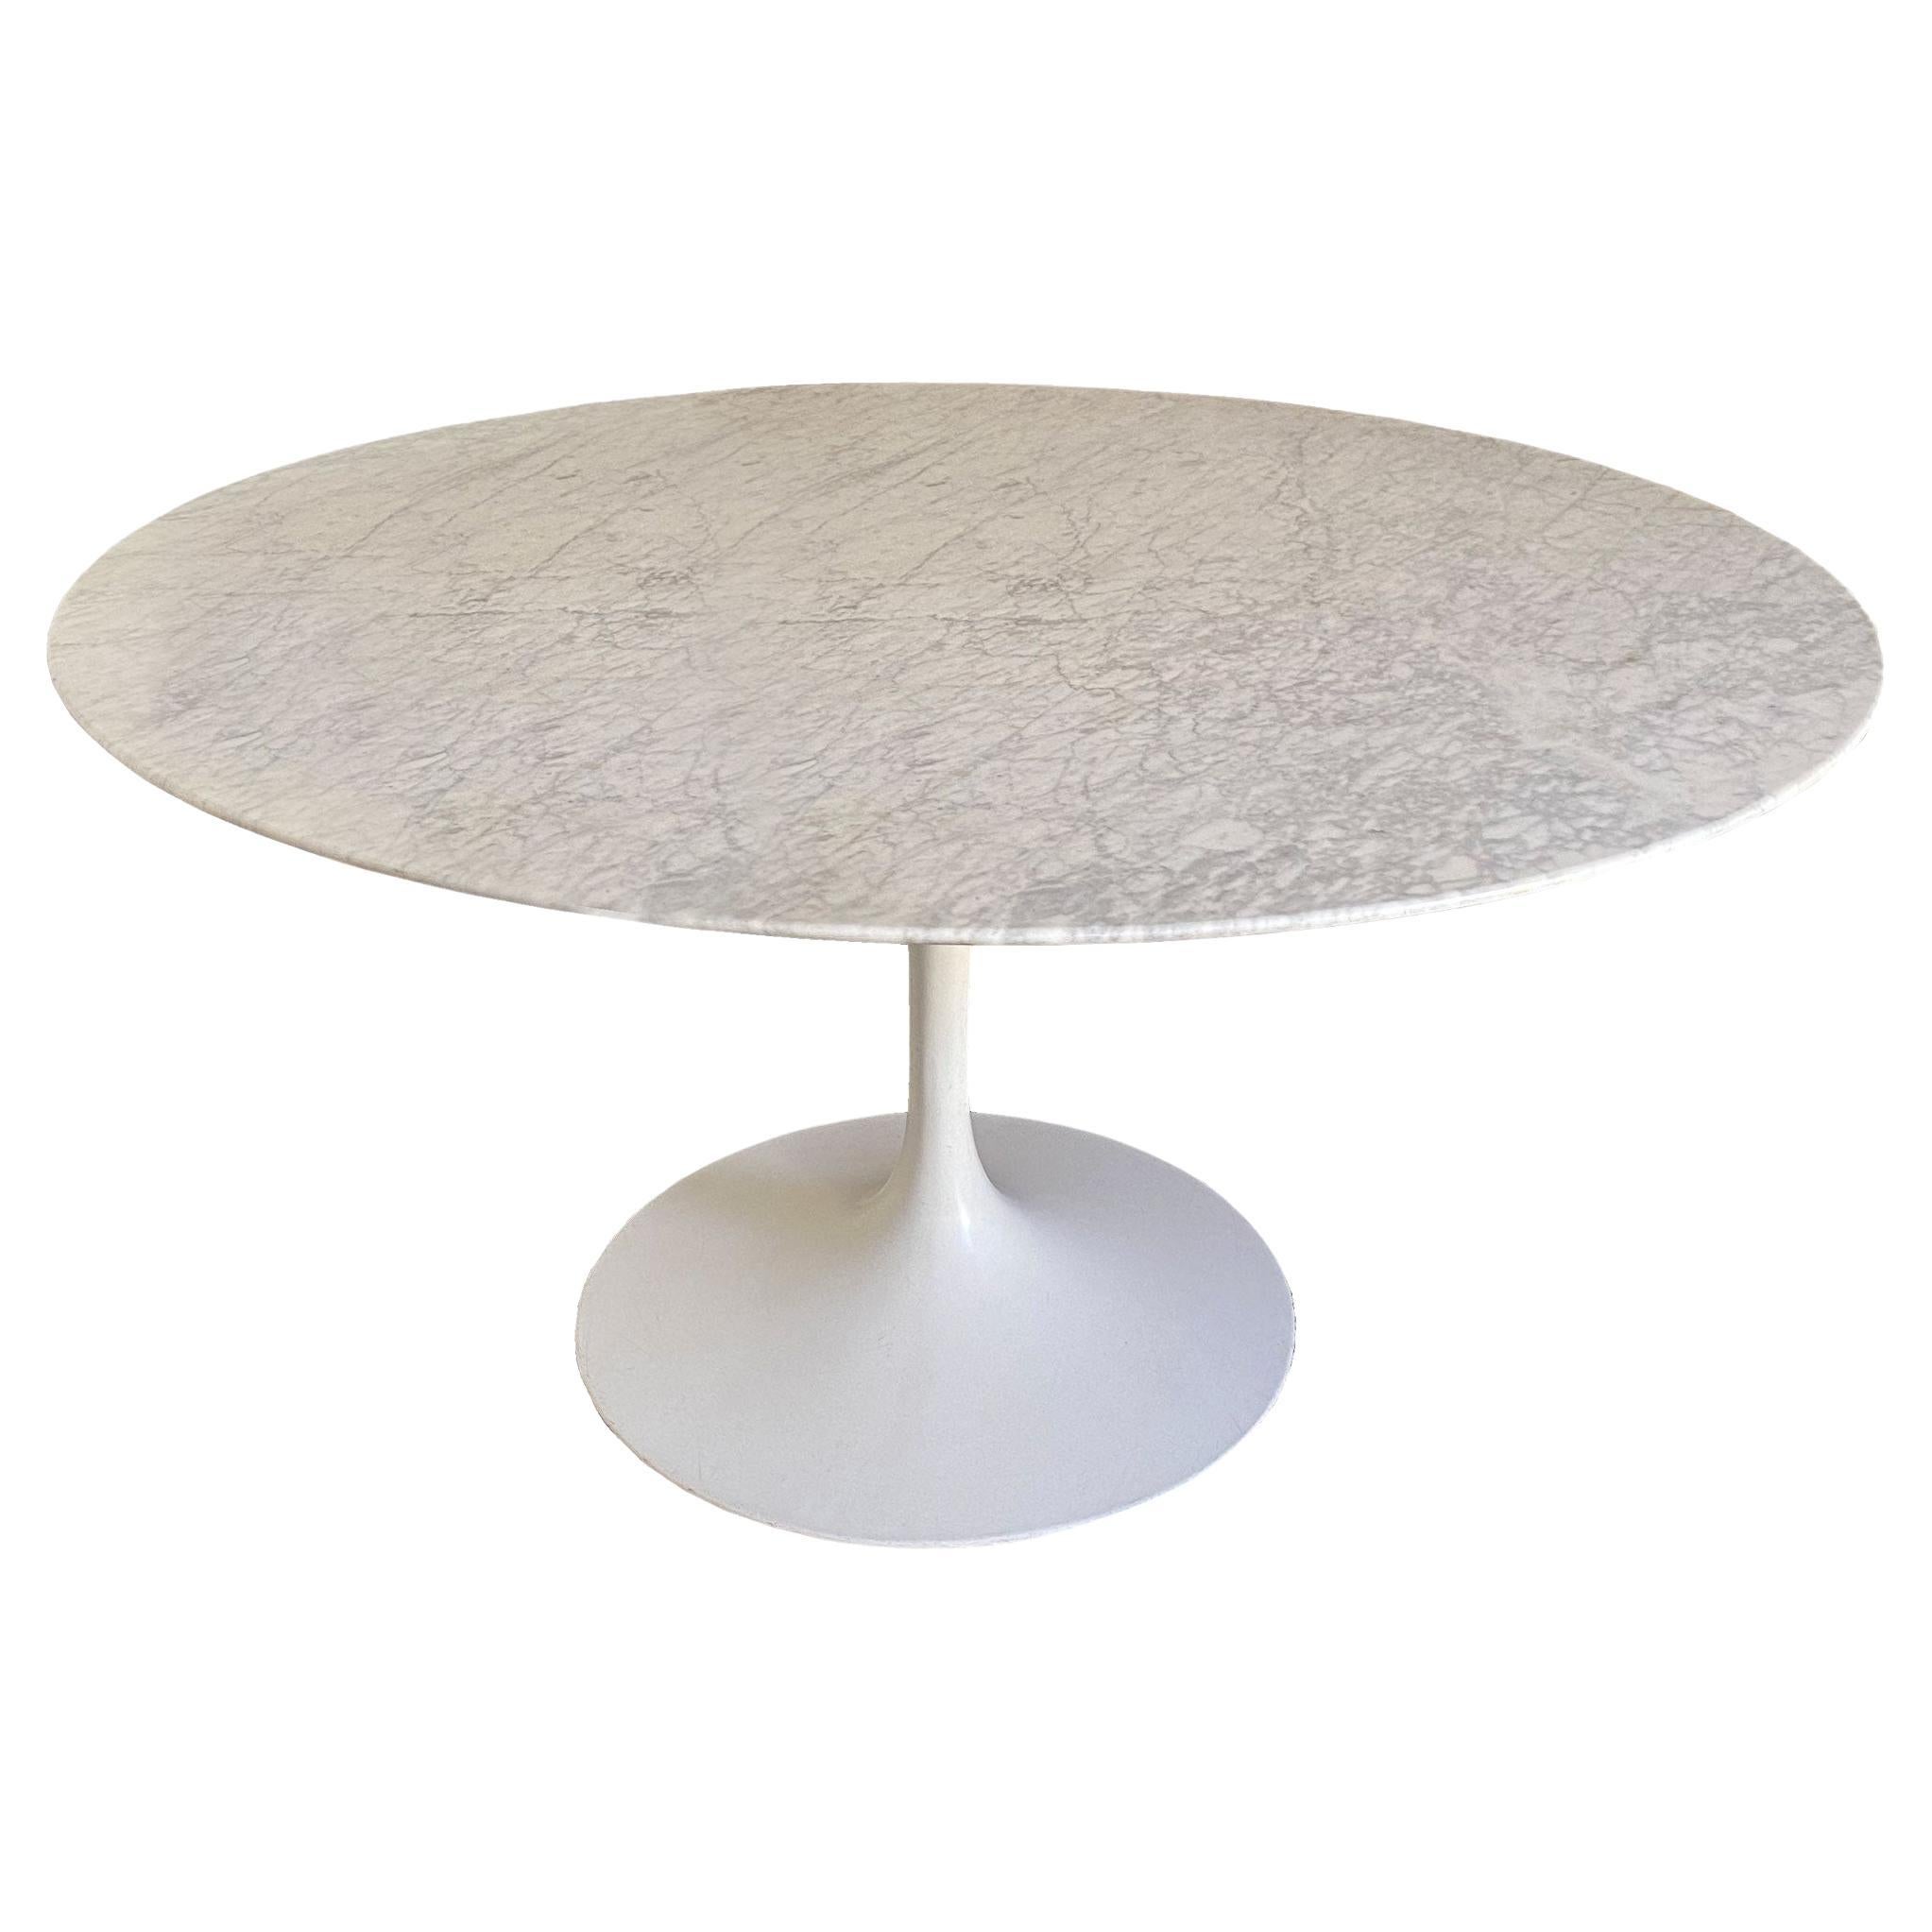 Eero Saarinen Knoll marble table 1970